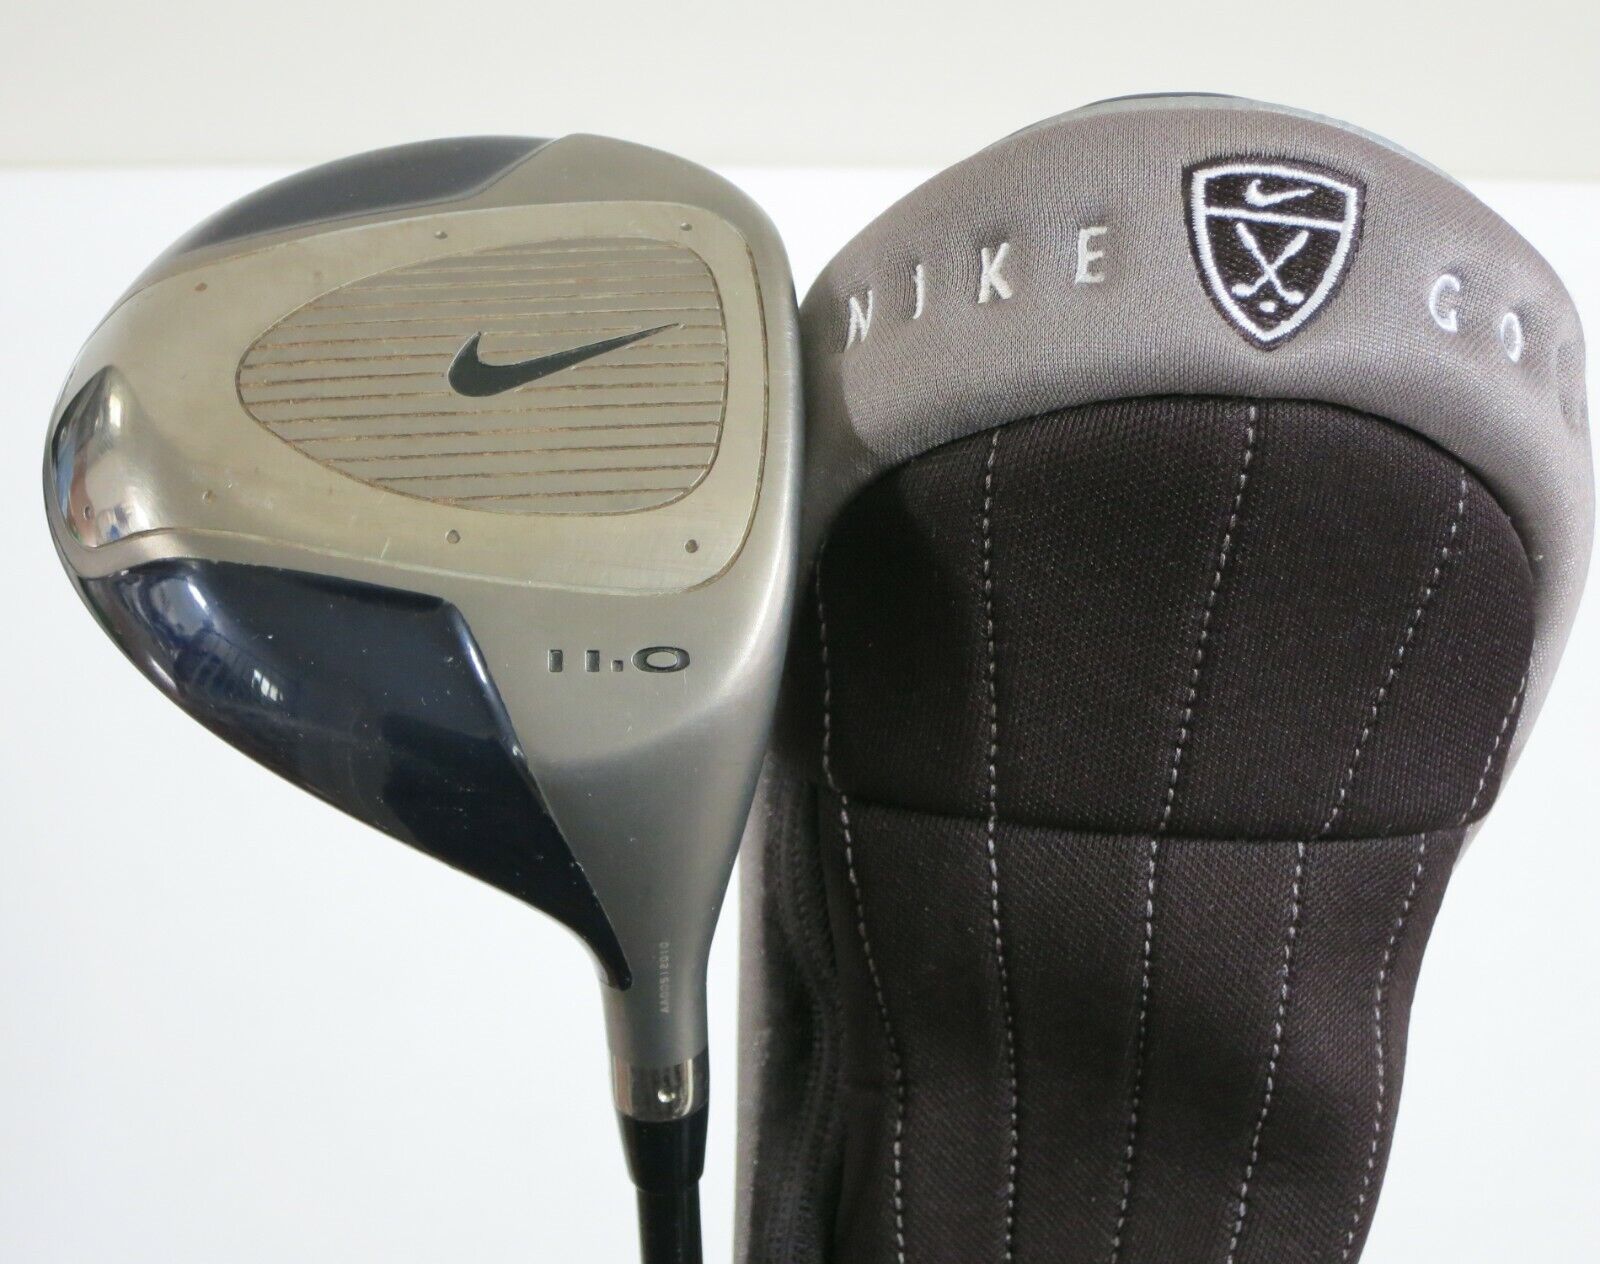 Nike Golf Fujikura 11.0° Driver, Graphite Shaft Reg Flex, 45\